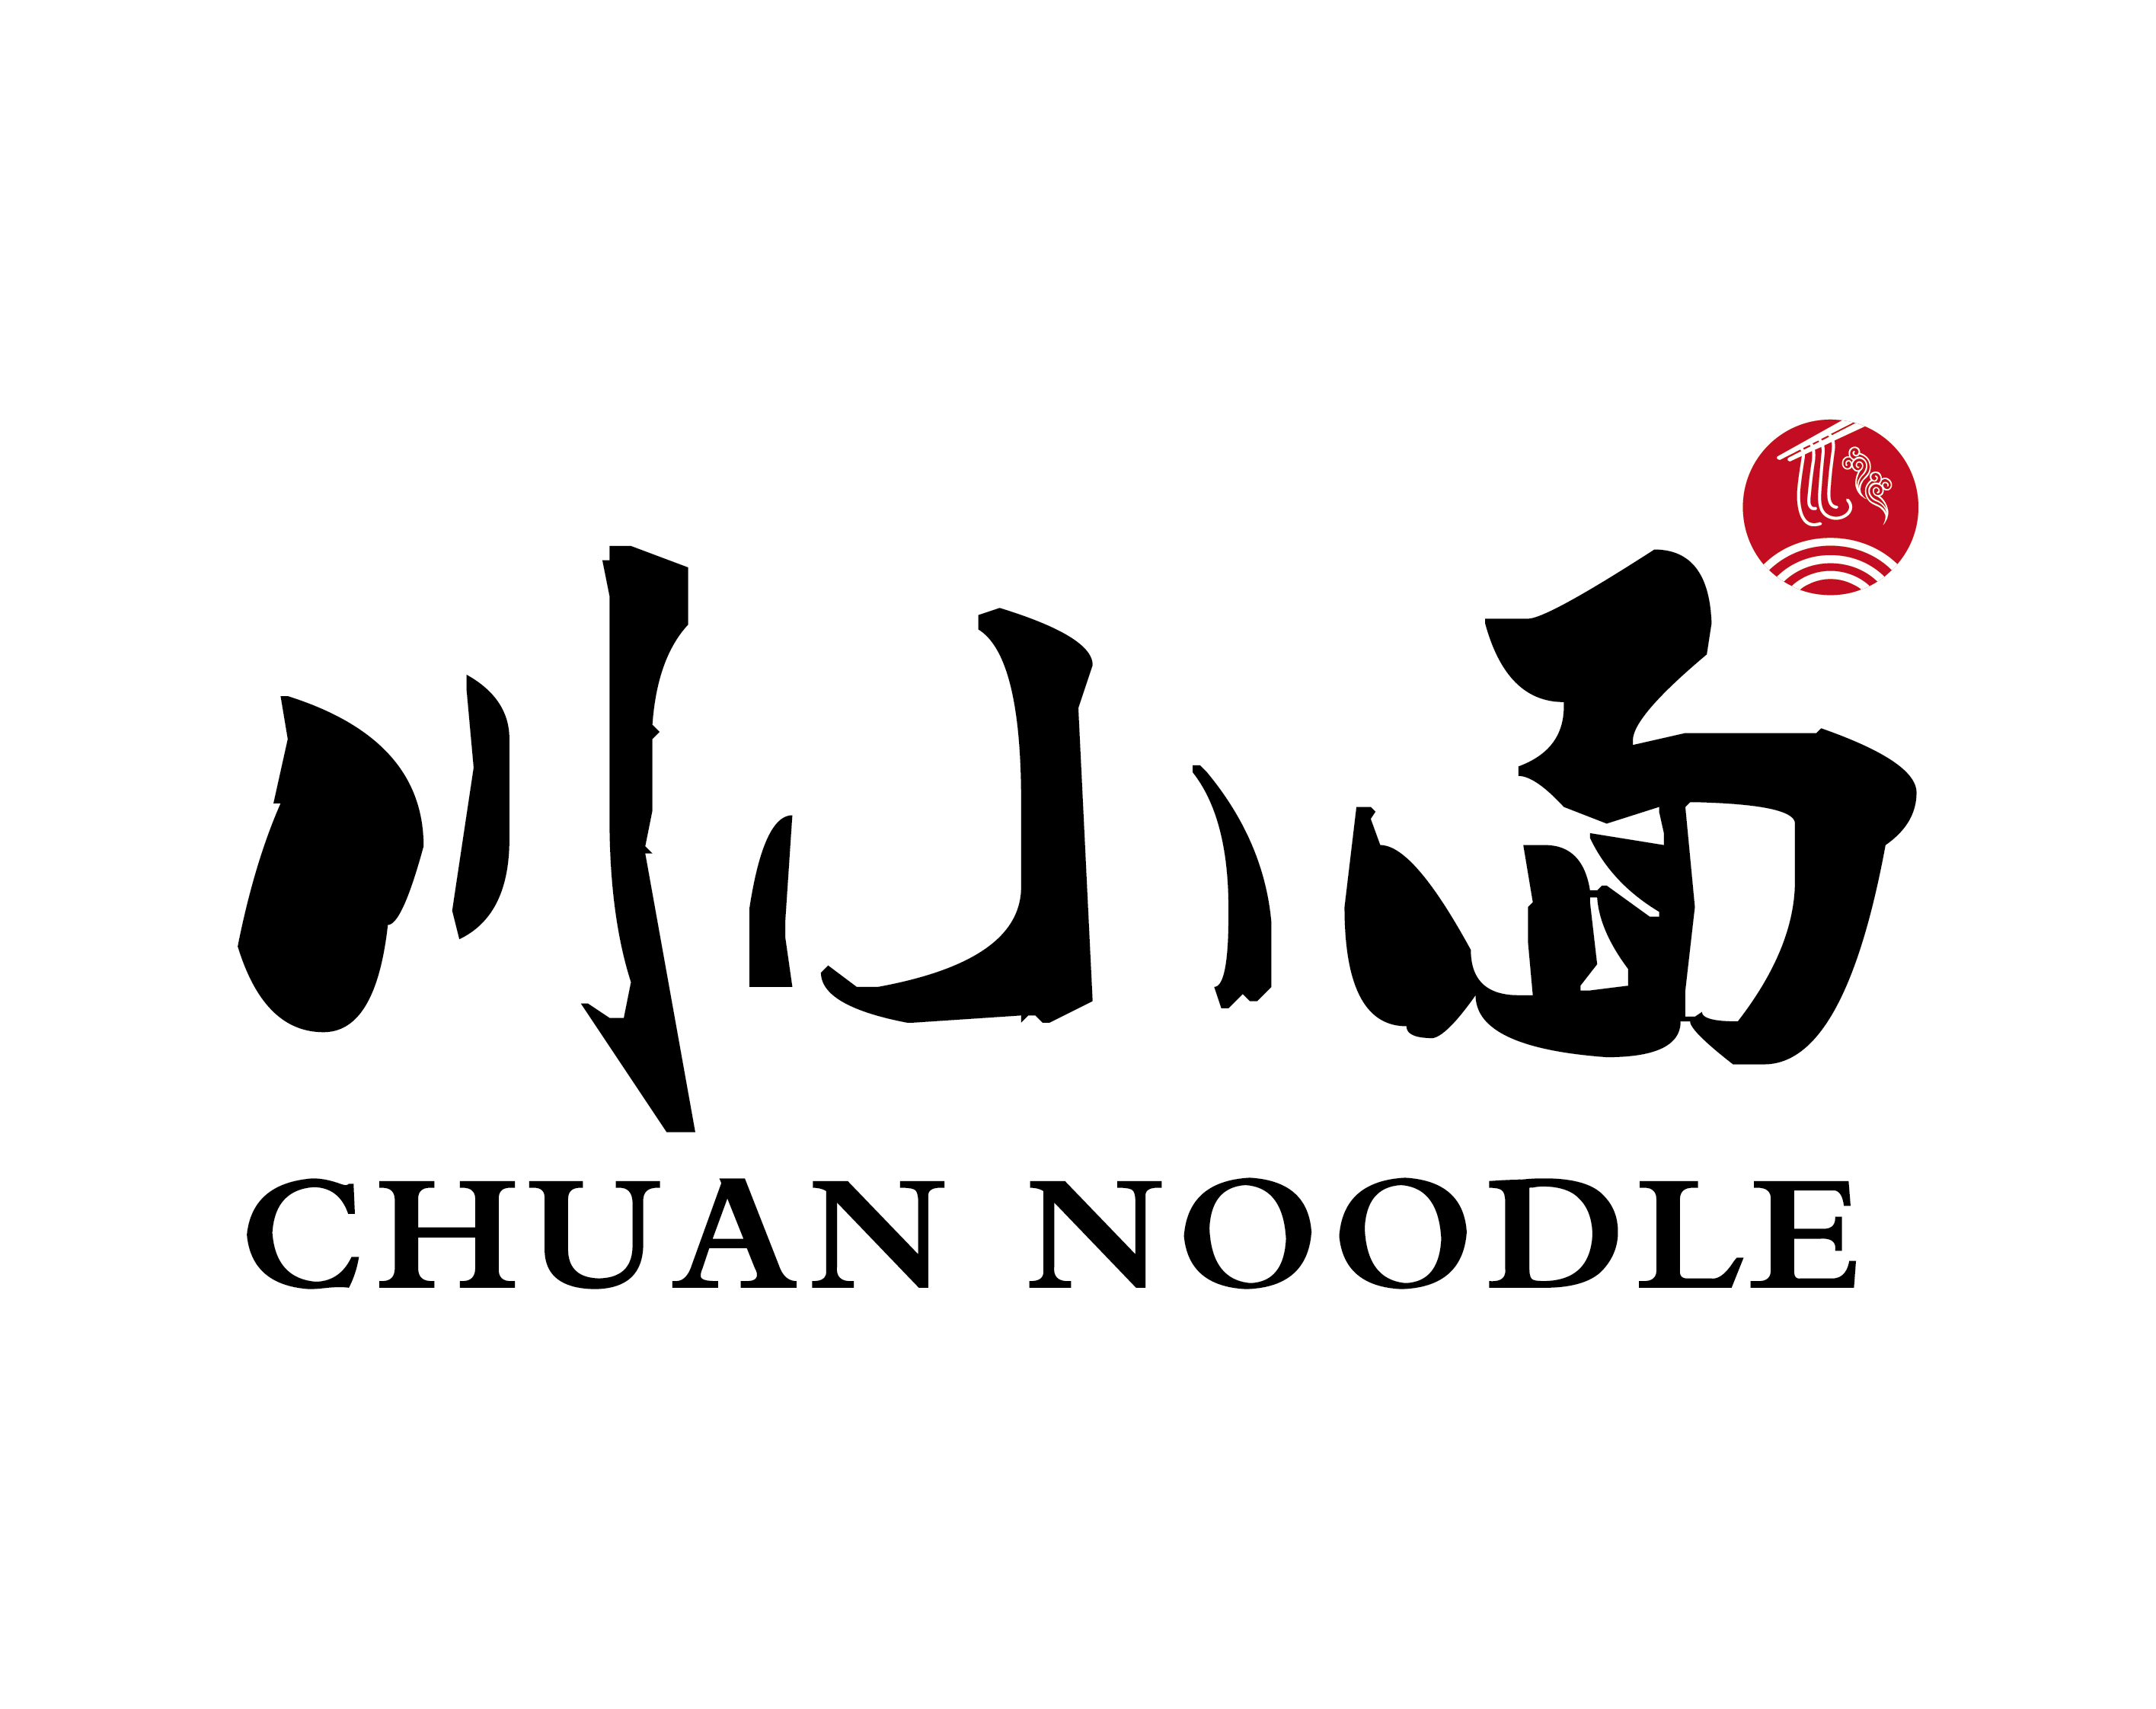 Chuan Noodle